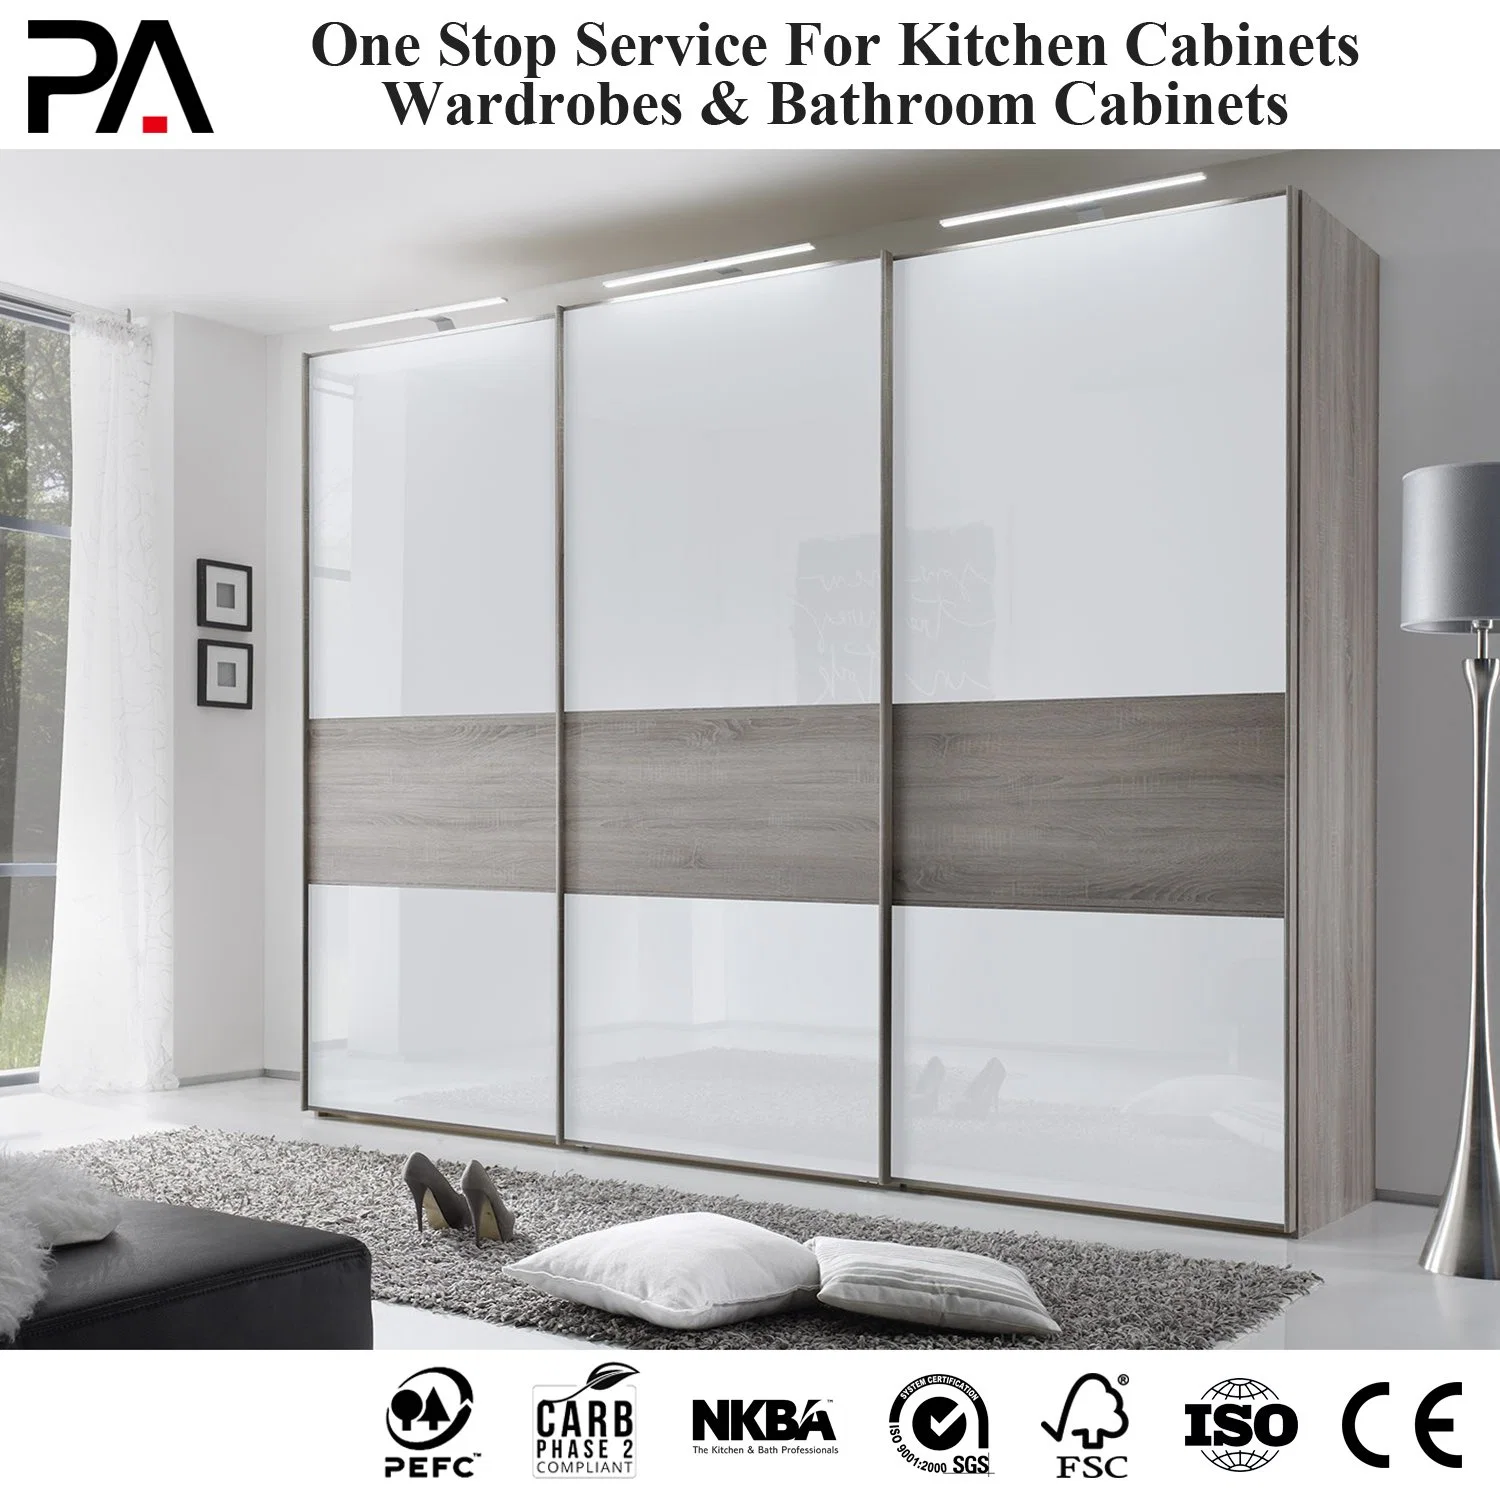 Ropa barata PA MDF 3 puerta corredera de diseño de plástico dormitorio armario armario con cajones